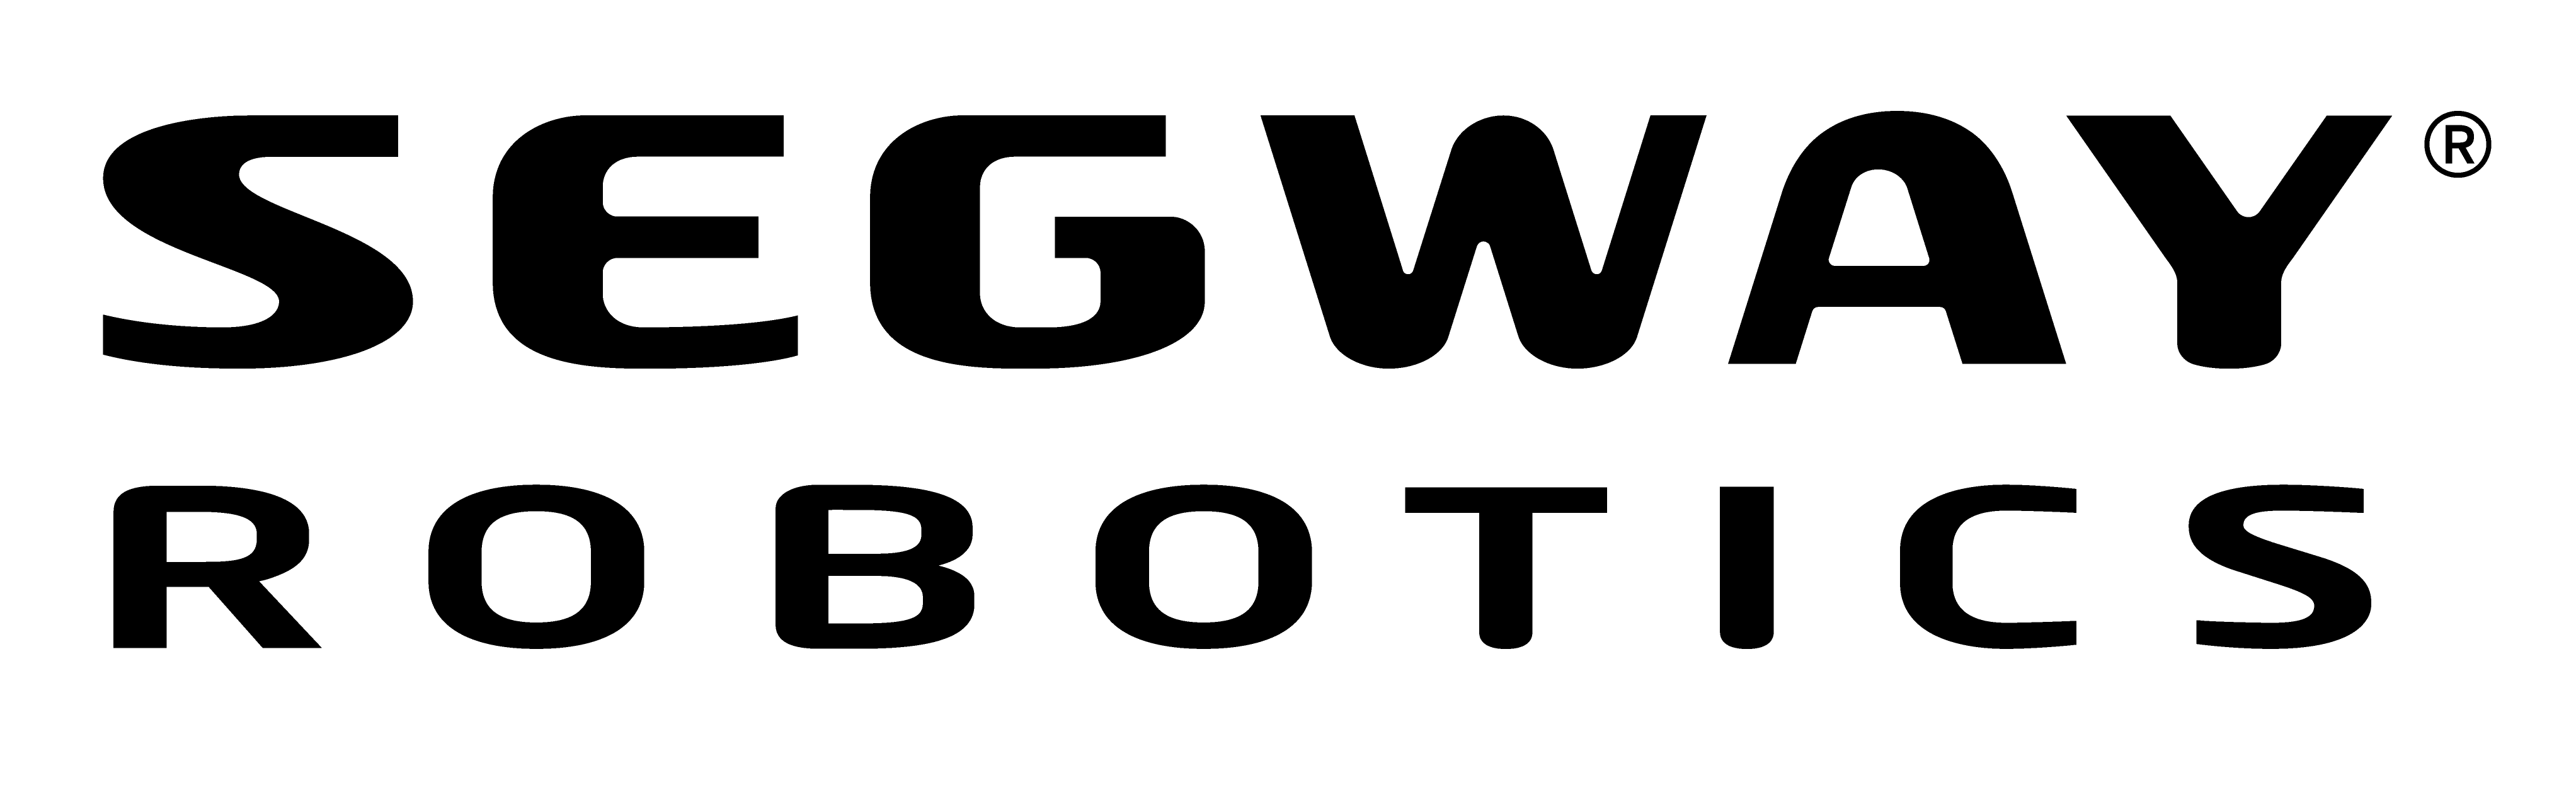 Segway Robotics